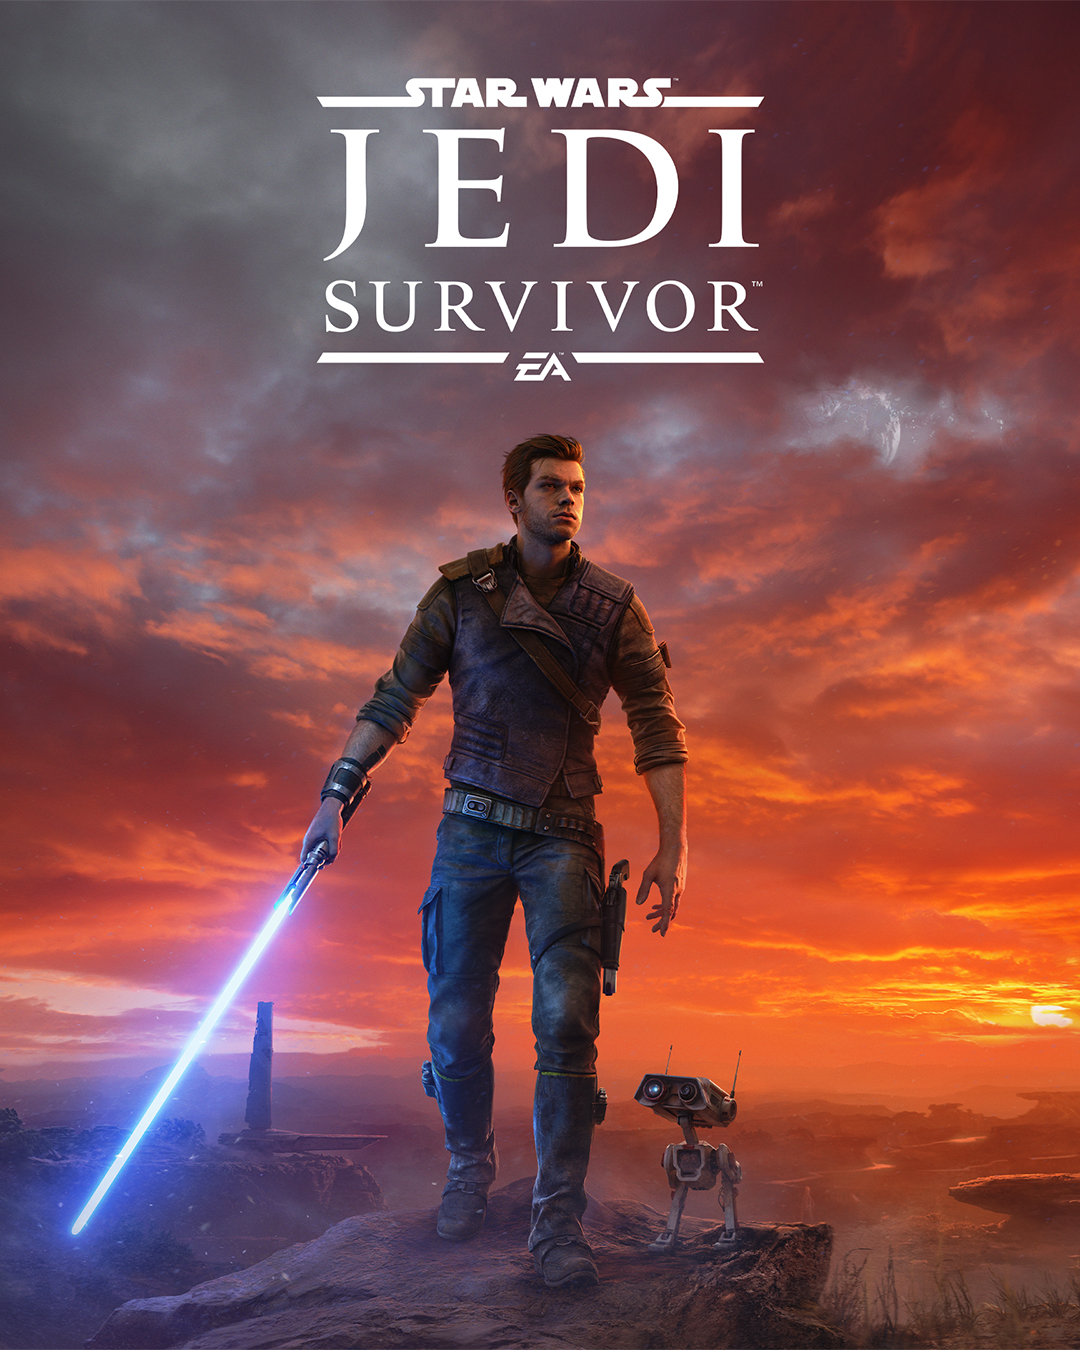 Star Wars Jedi Survivor Jedi Robes location